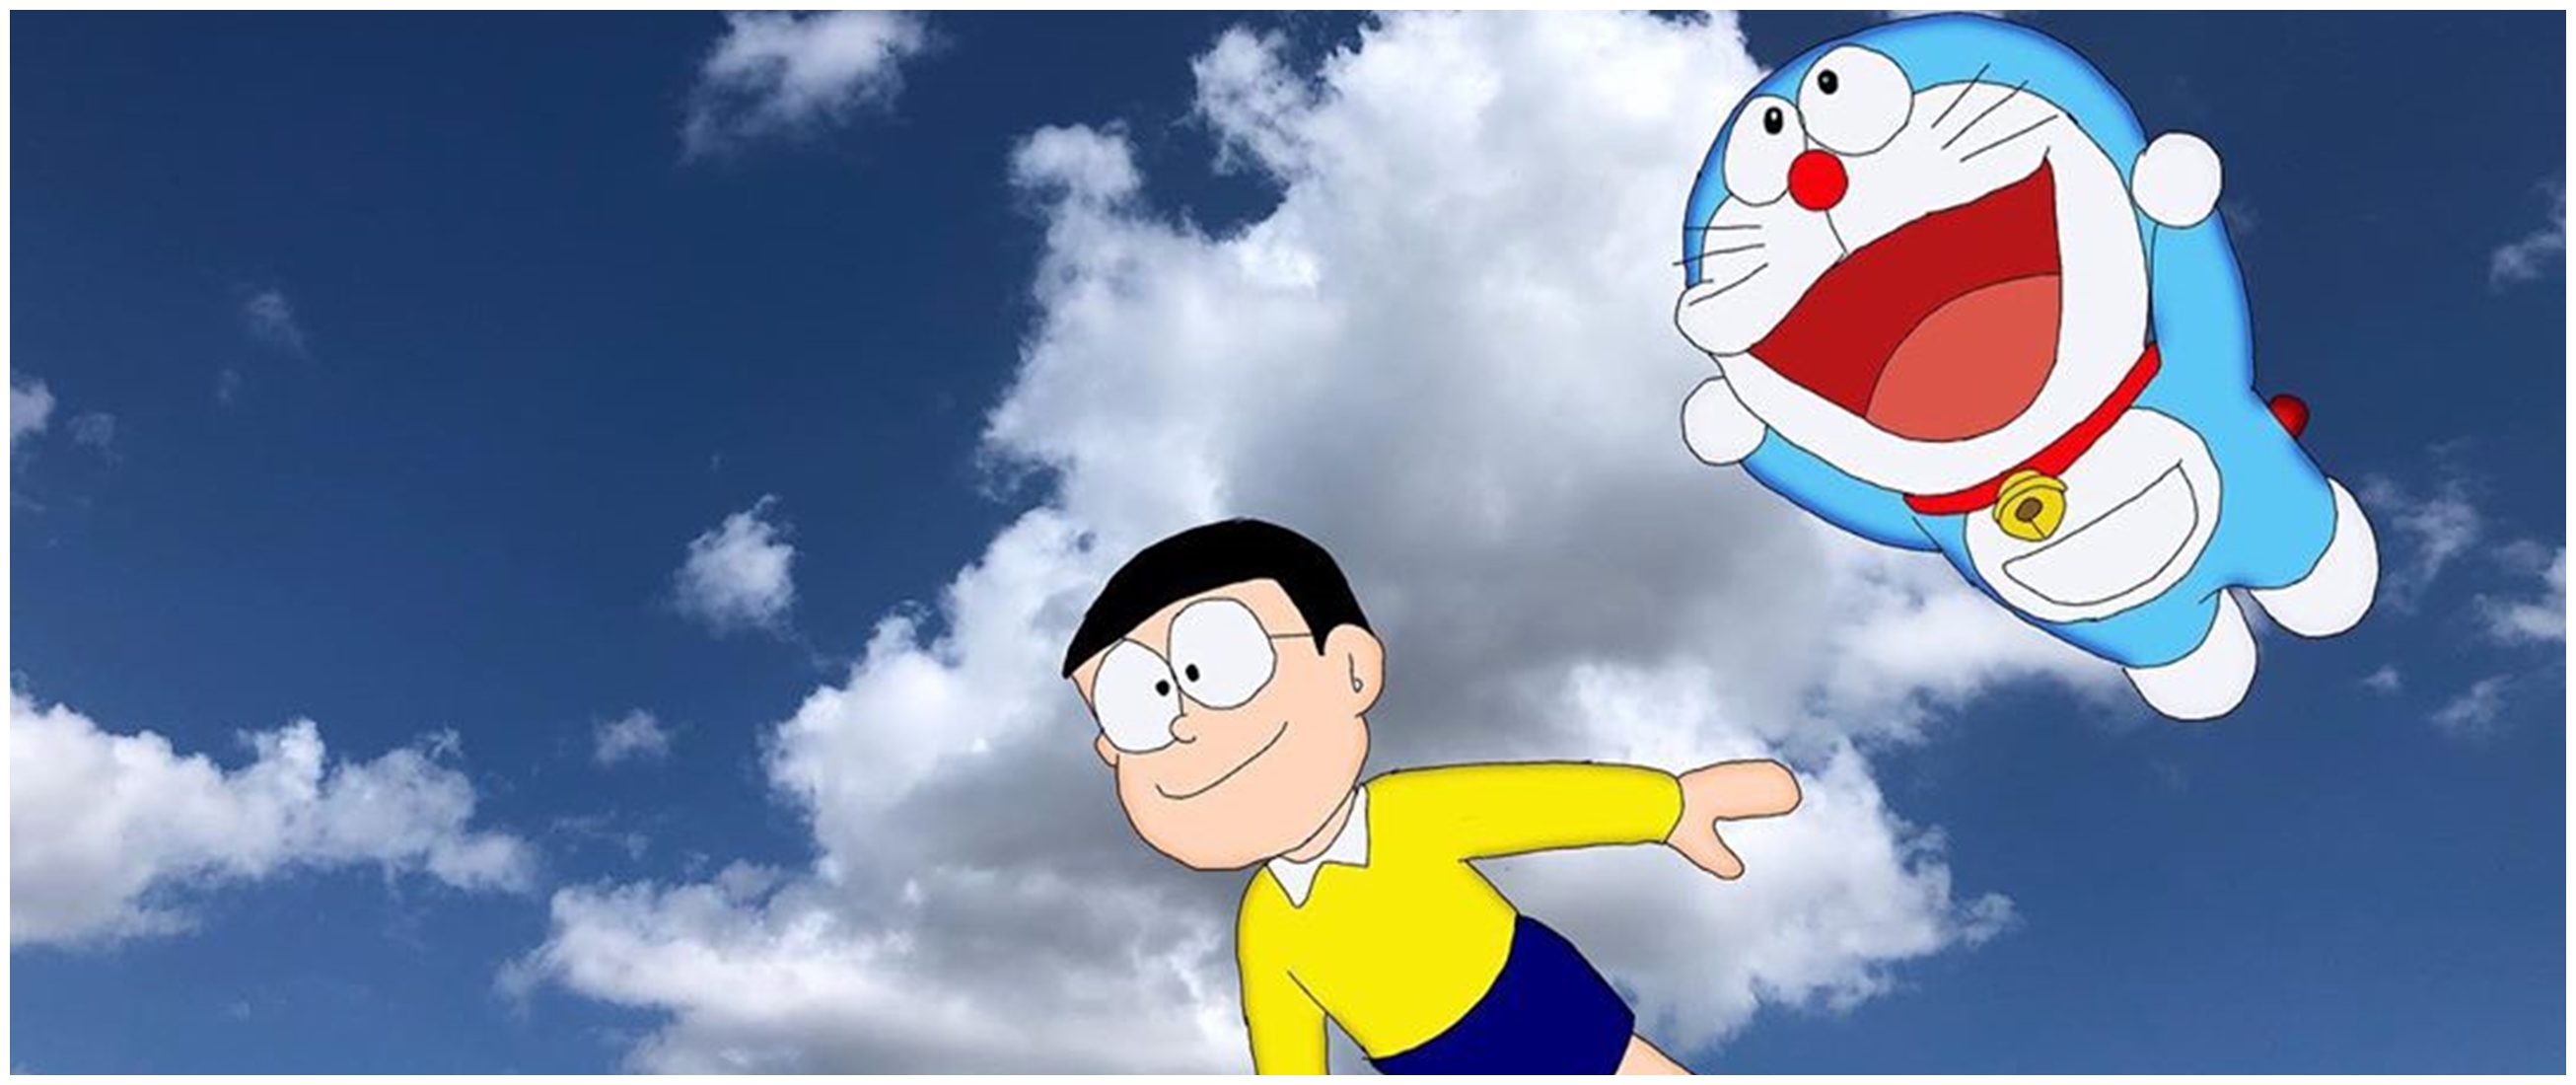 30 Kata kata cinta Nobita  dalam kartun Doraemon menyentuh 